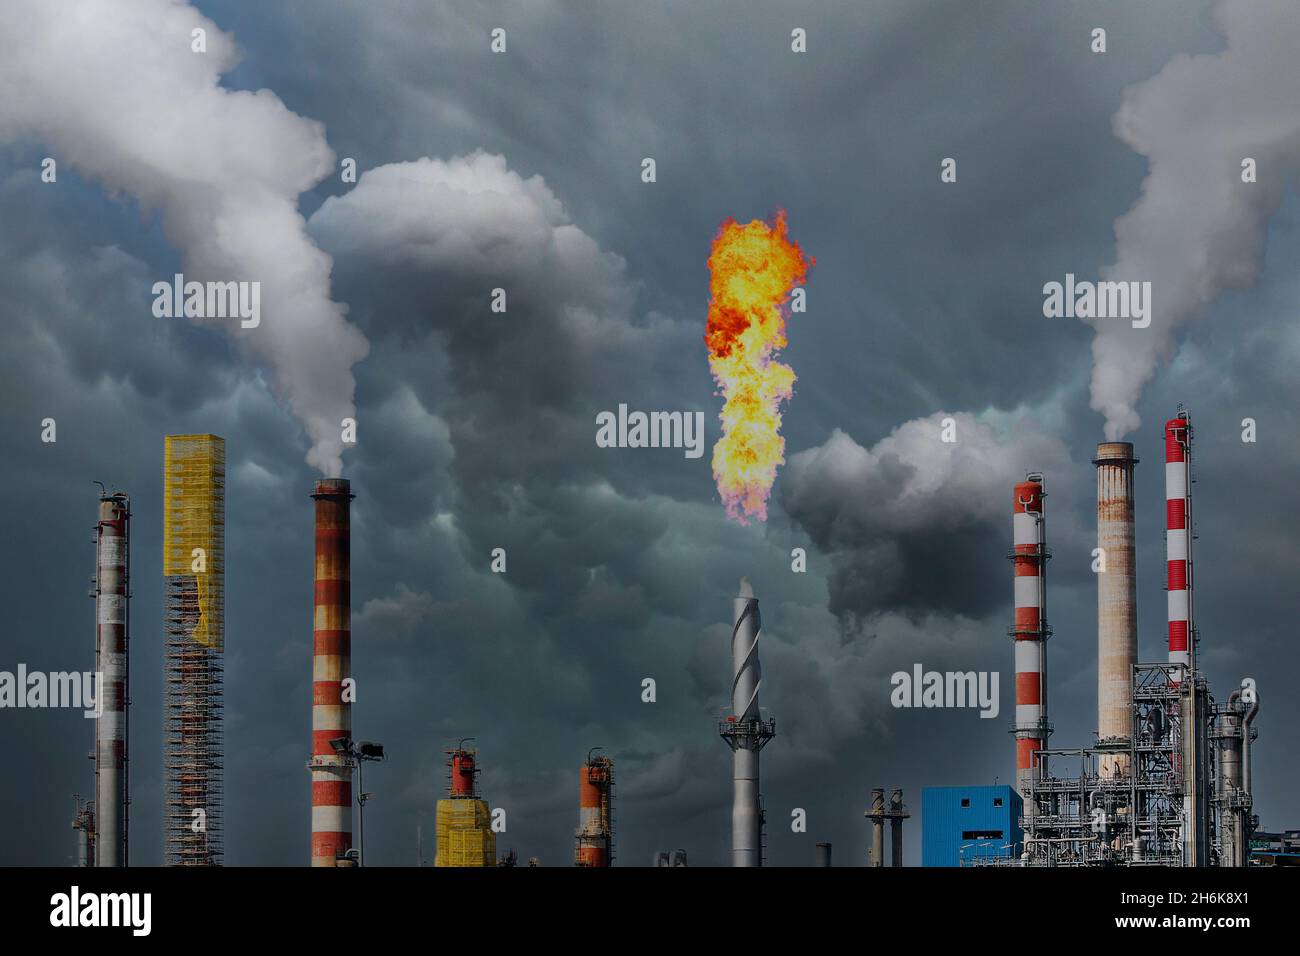 Columnas de humo y gases de combustión antorcha en una gran refinería de petróleo Foto de stock